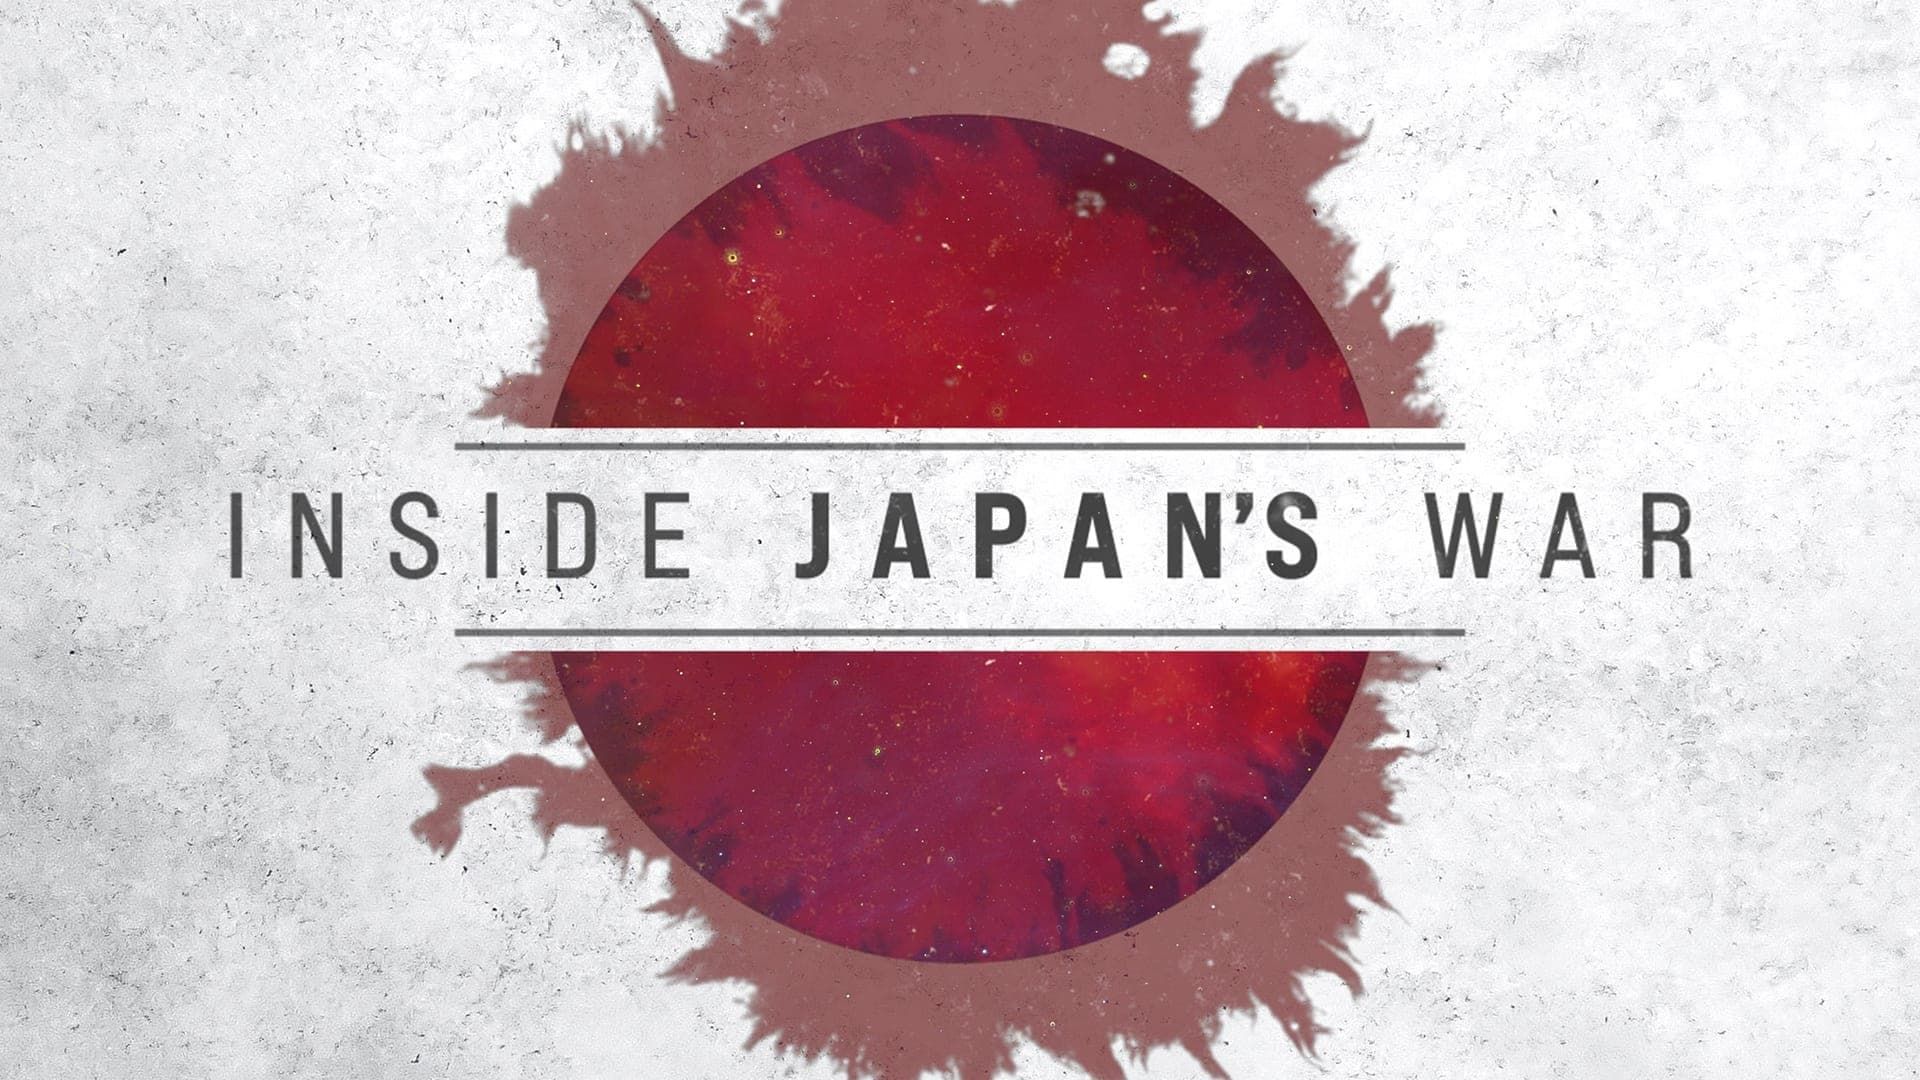 Inside Japan's War background